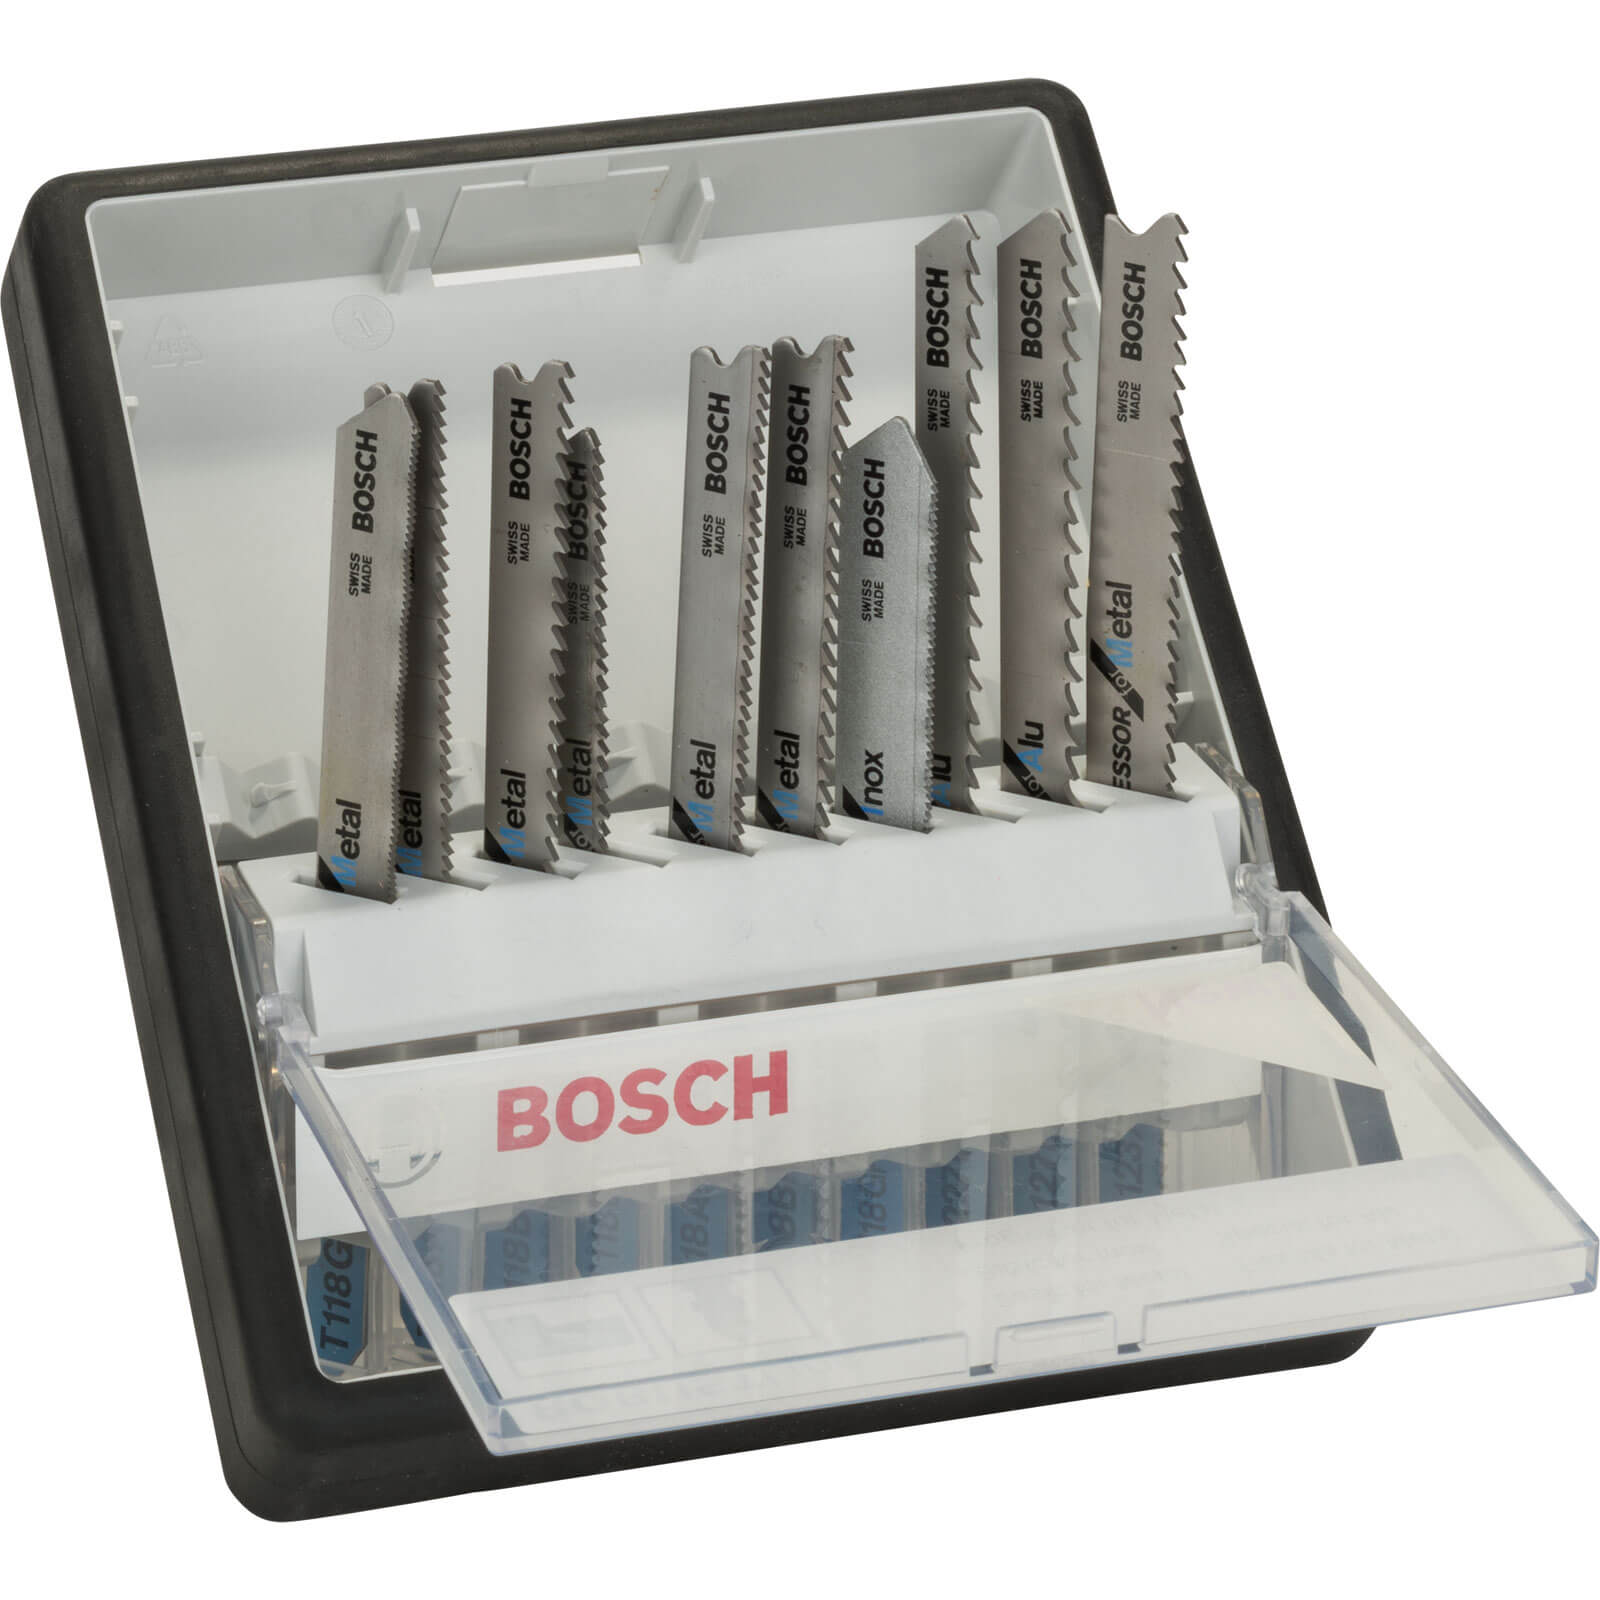 Image of Bosch 10 Piece Metal Cutting Jigsaw Blade Set